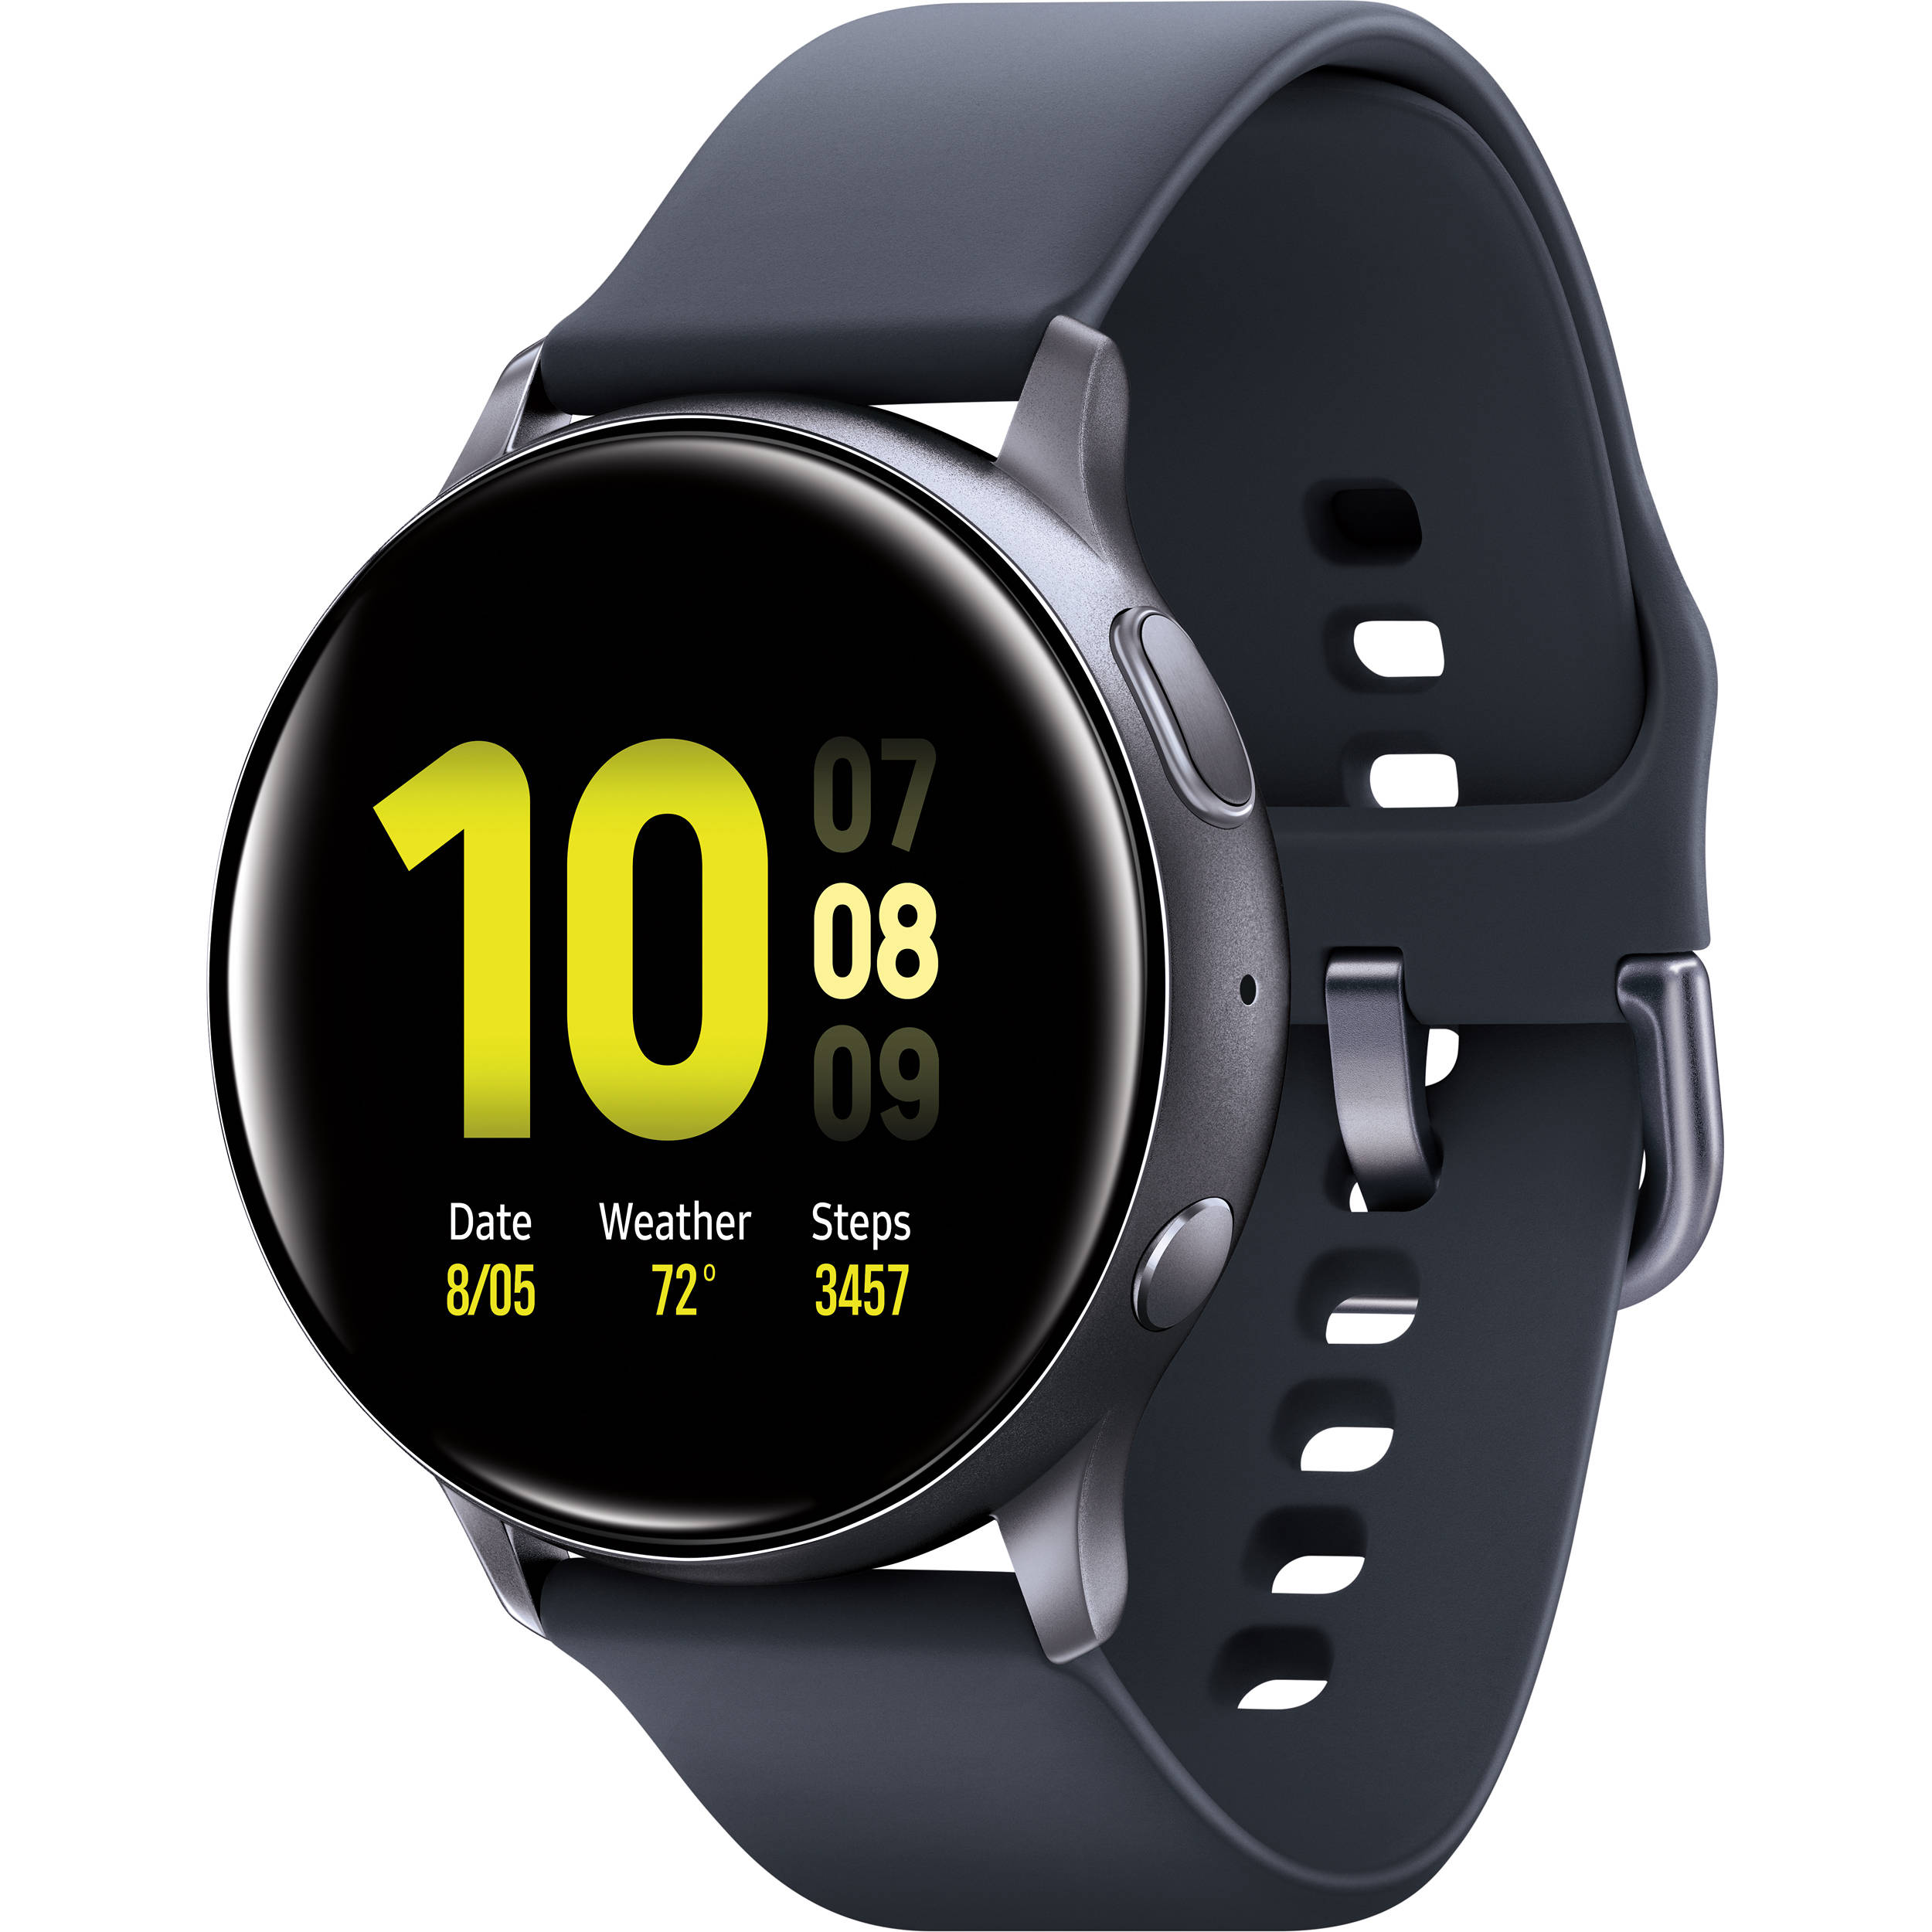 Обновление для часов Samsung Galaxy Watch Active 2 устранит мерцание экрана